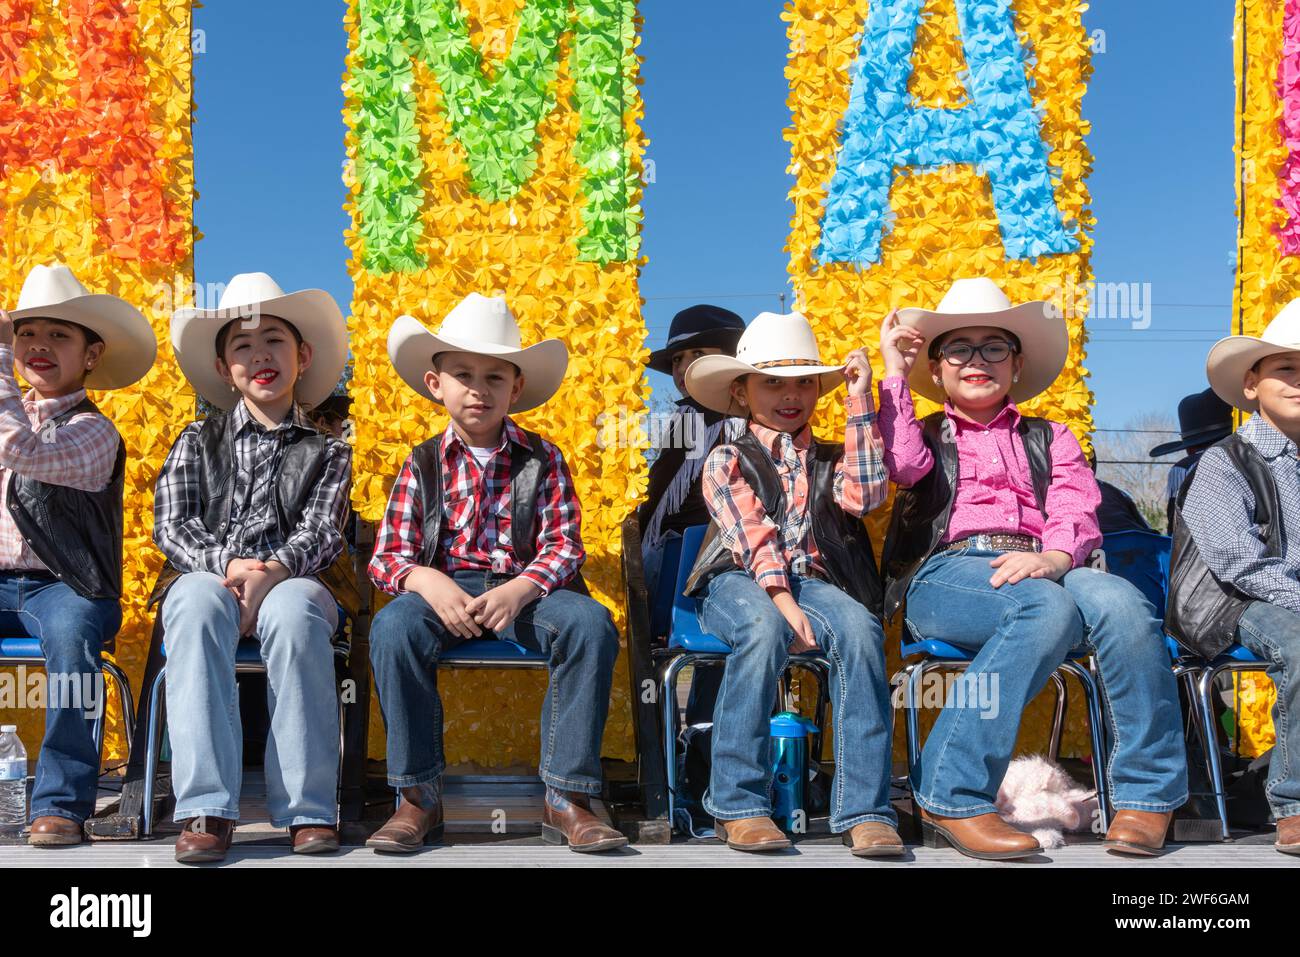 Jeunes cow-boys et cow-girls sur un char coloré dans la 92e édition annuelle de la Parade des oranges de Texas Citrus Fiesta, Mission, Texas, États-Unis. Banque D'Images